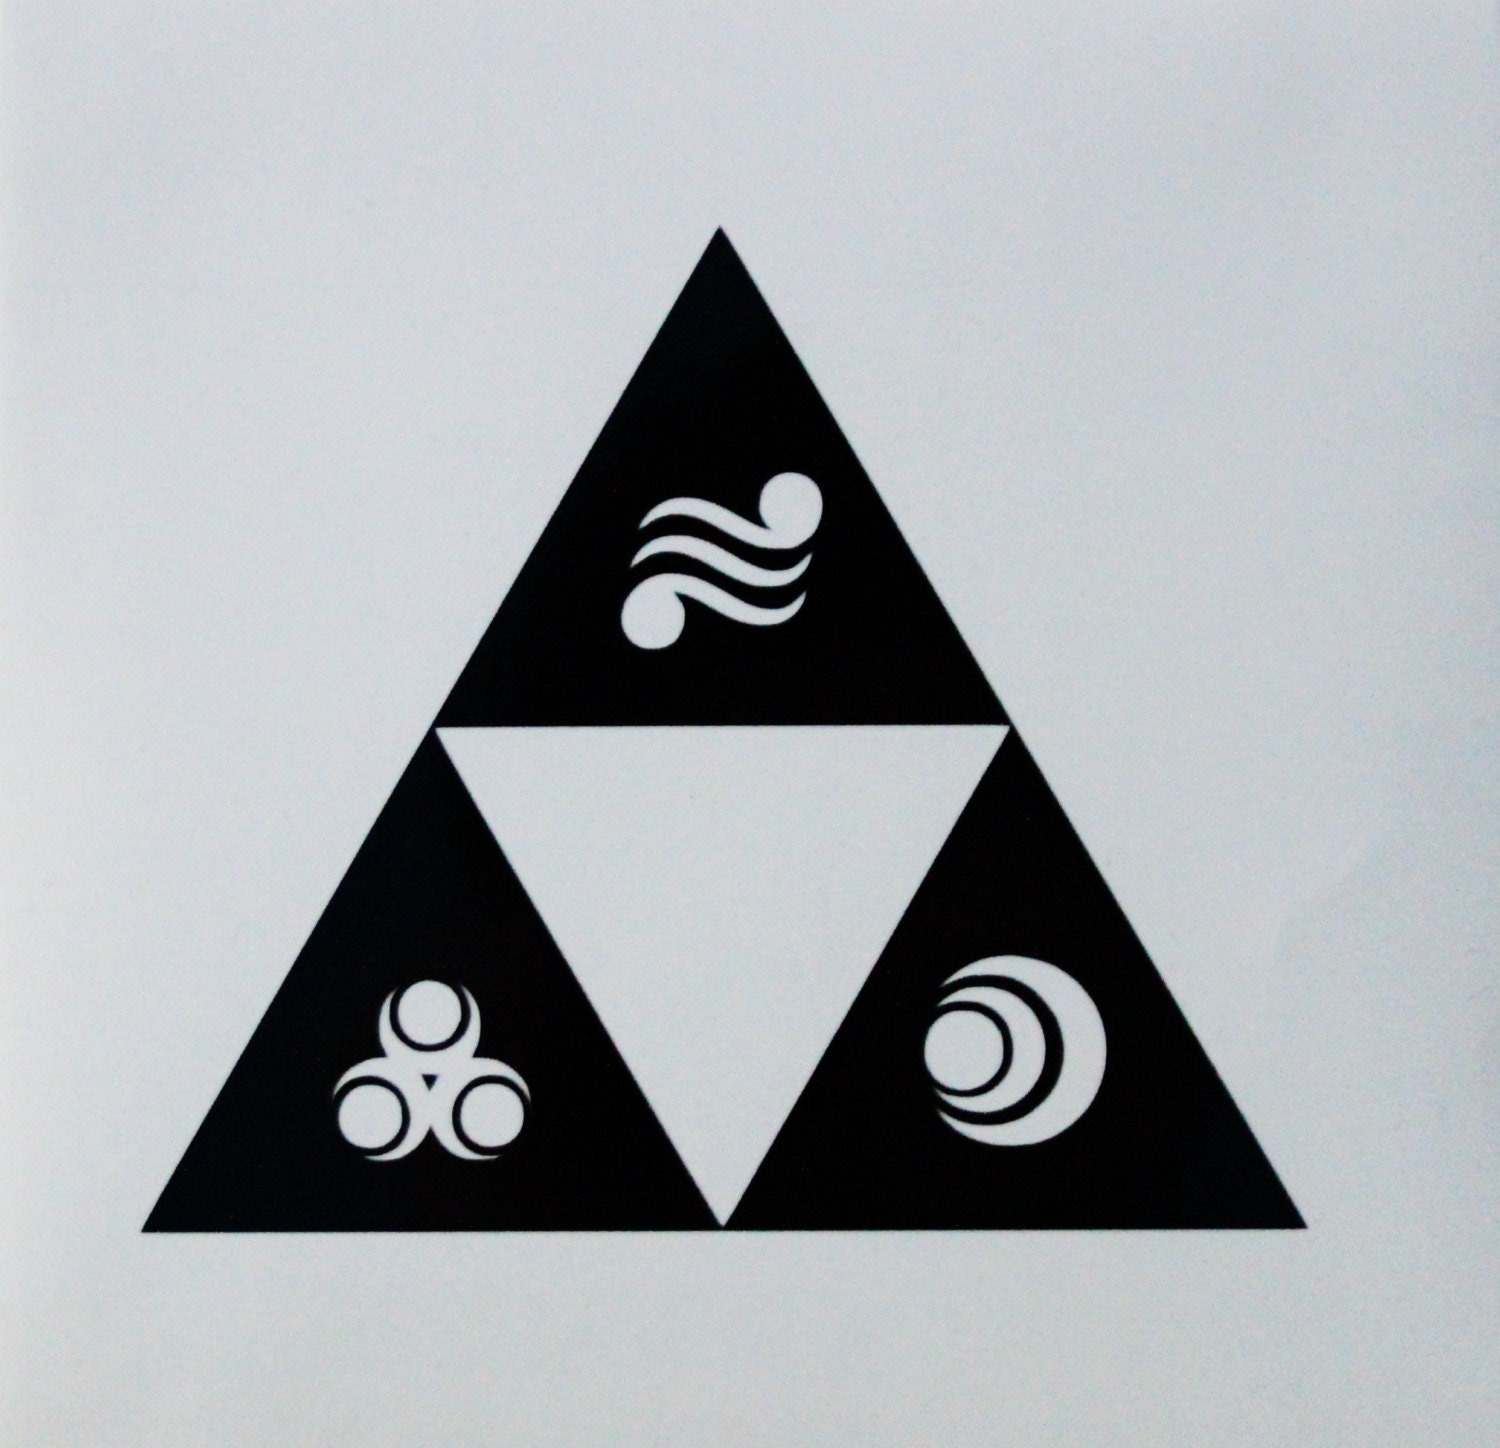 zelda symbol of goddess the by goddess with Black triforce of symbols Zelda zelda Legend Triforce